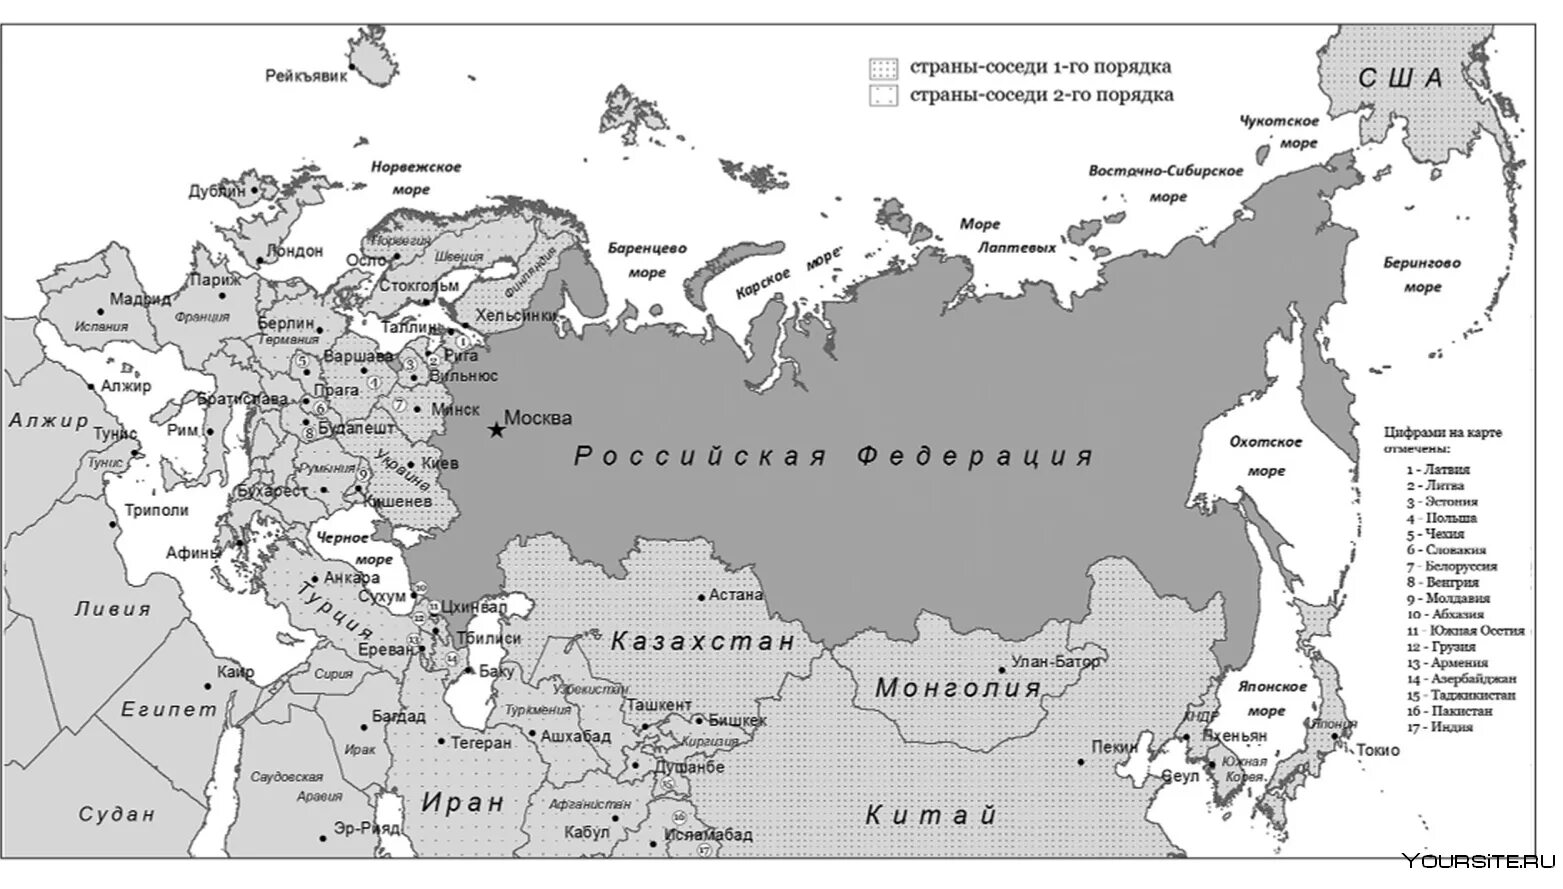 Государства граничащие с Россией на карте. Карта России с границами других государств. Страны граничащие с РФ на карте. С какими странами граничит Россия контурная карта.